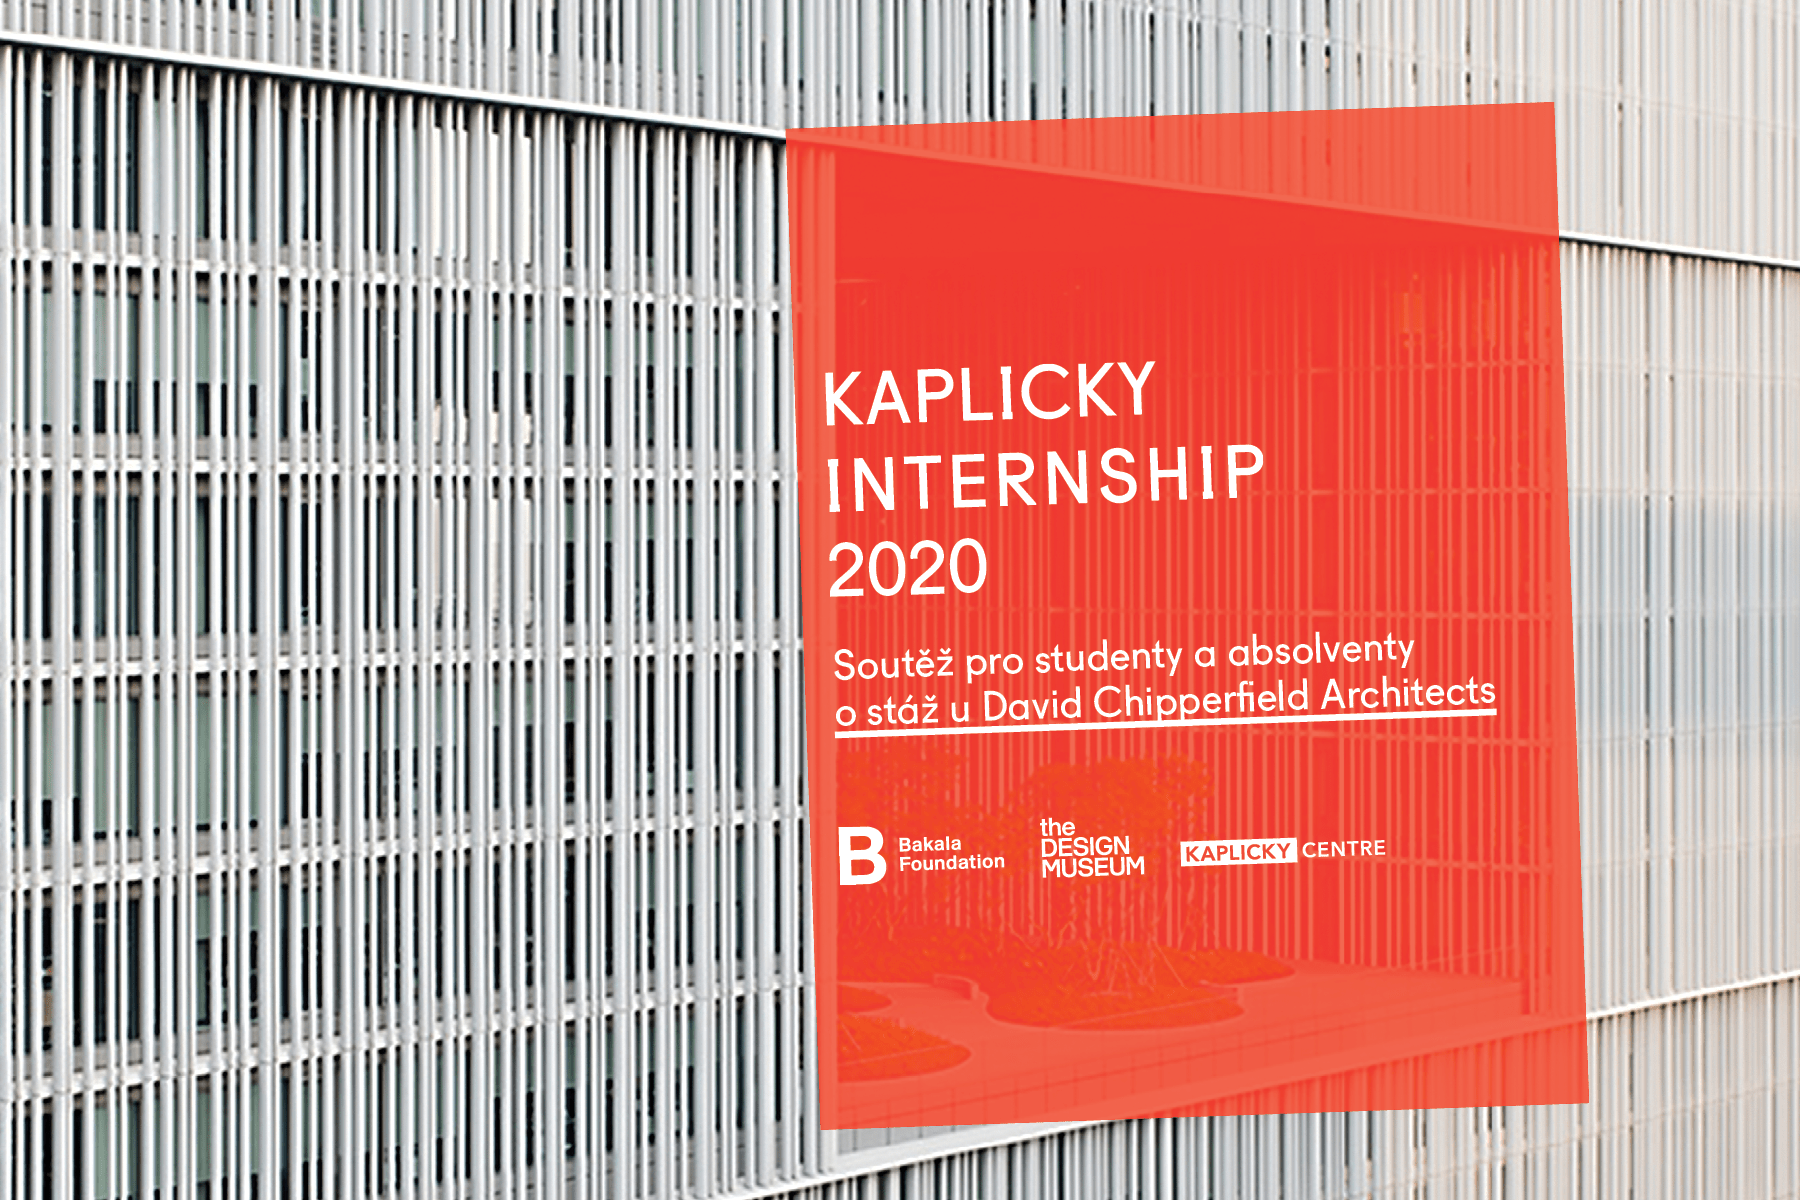 Kaplicky Internship 2020